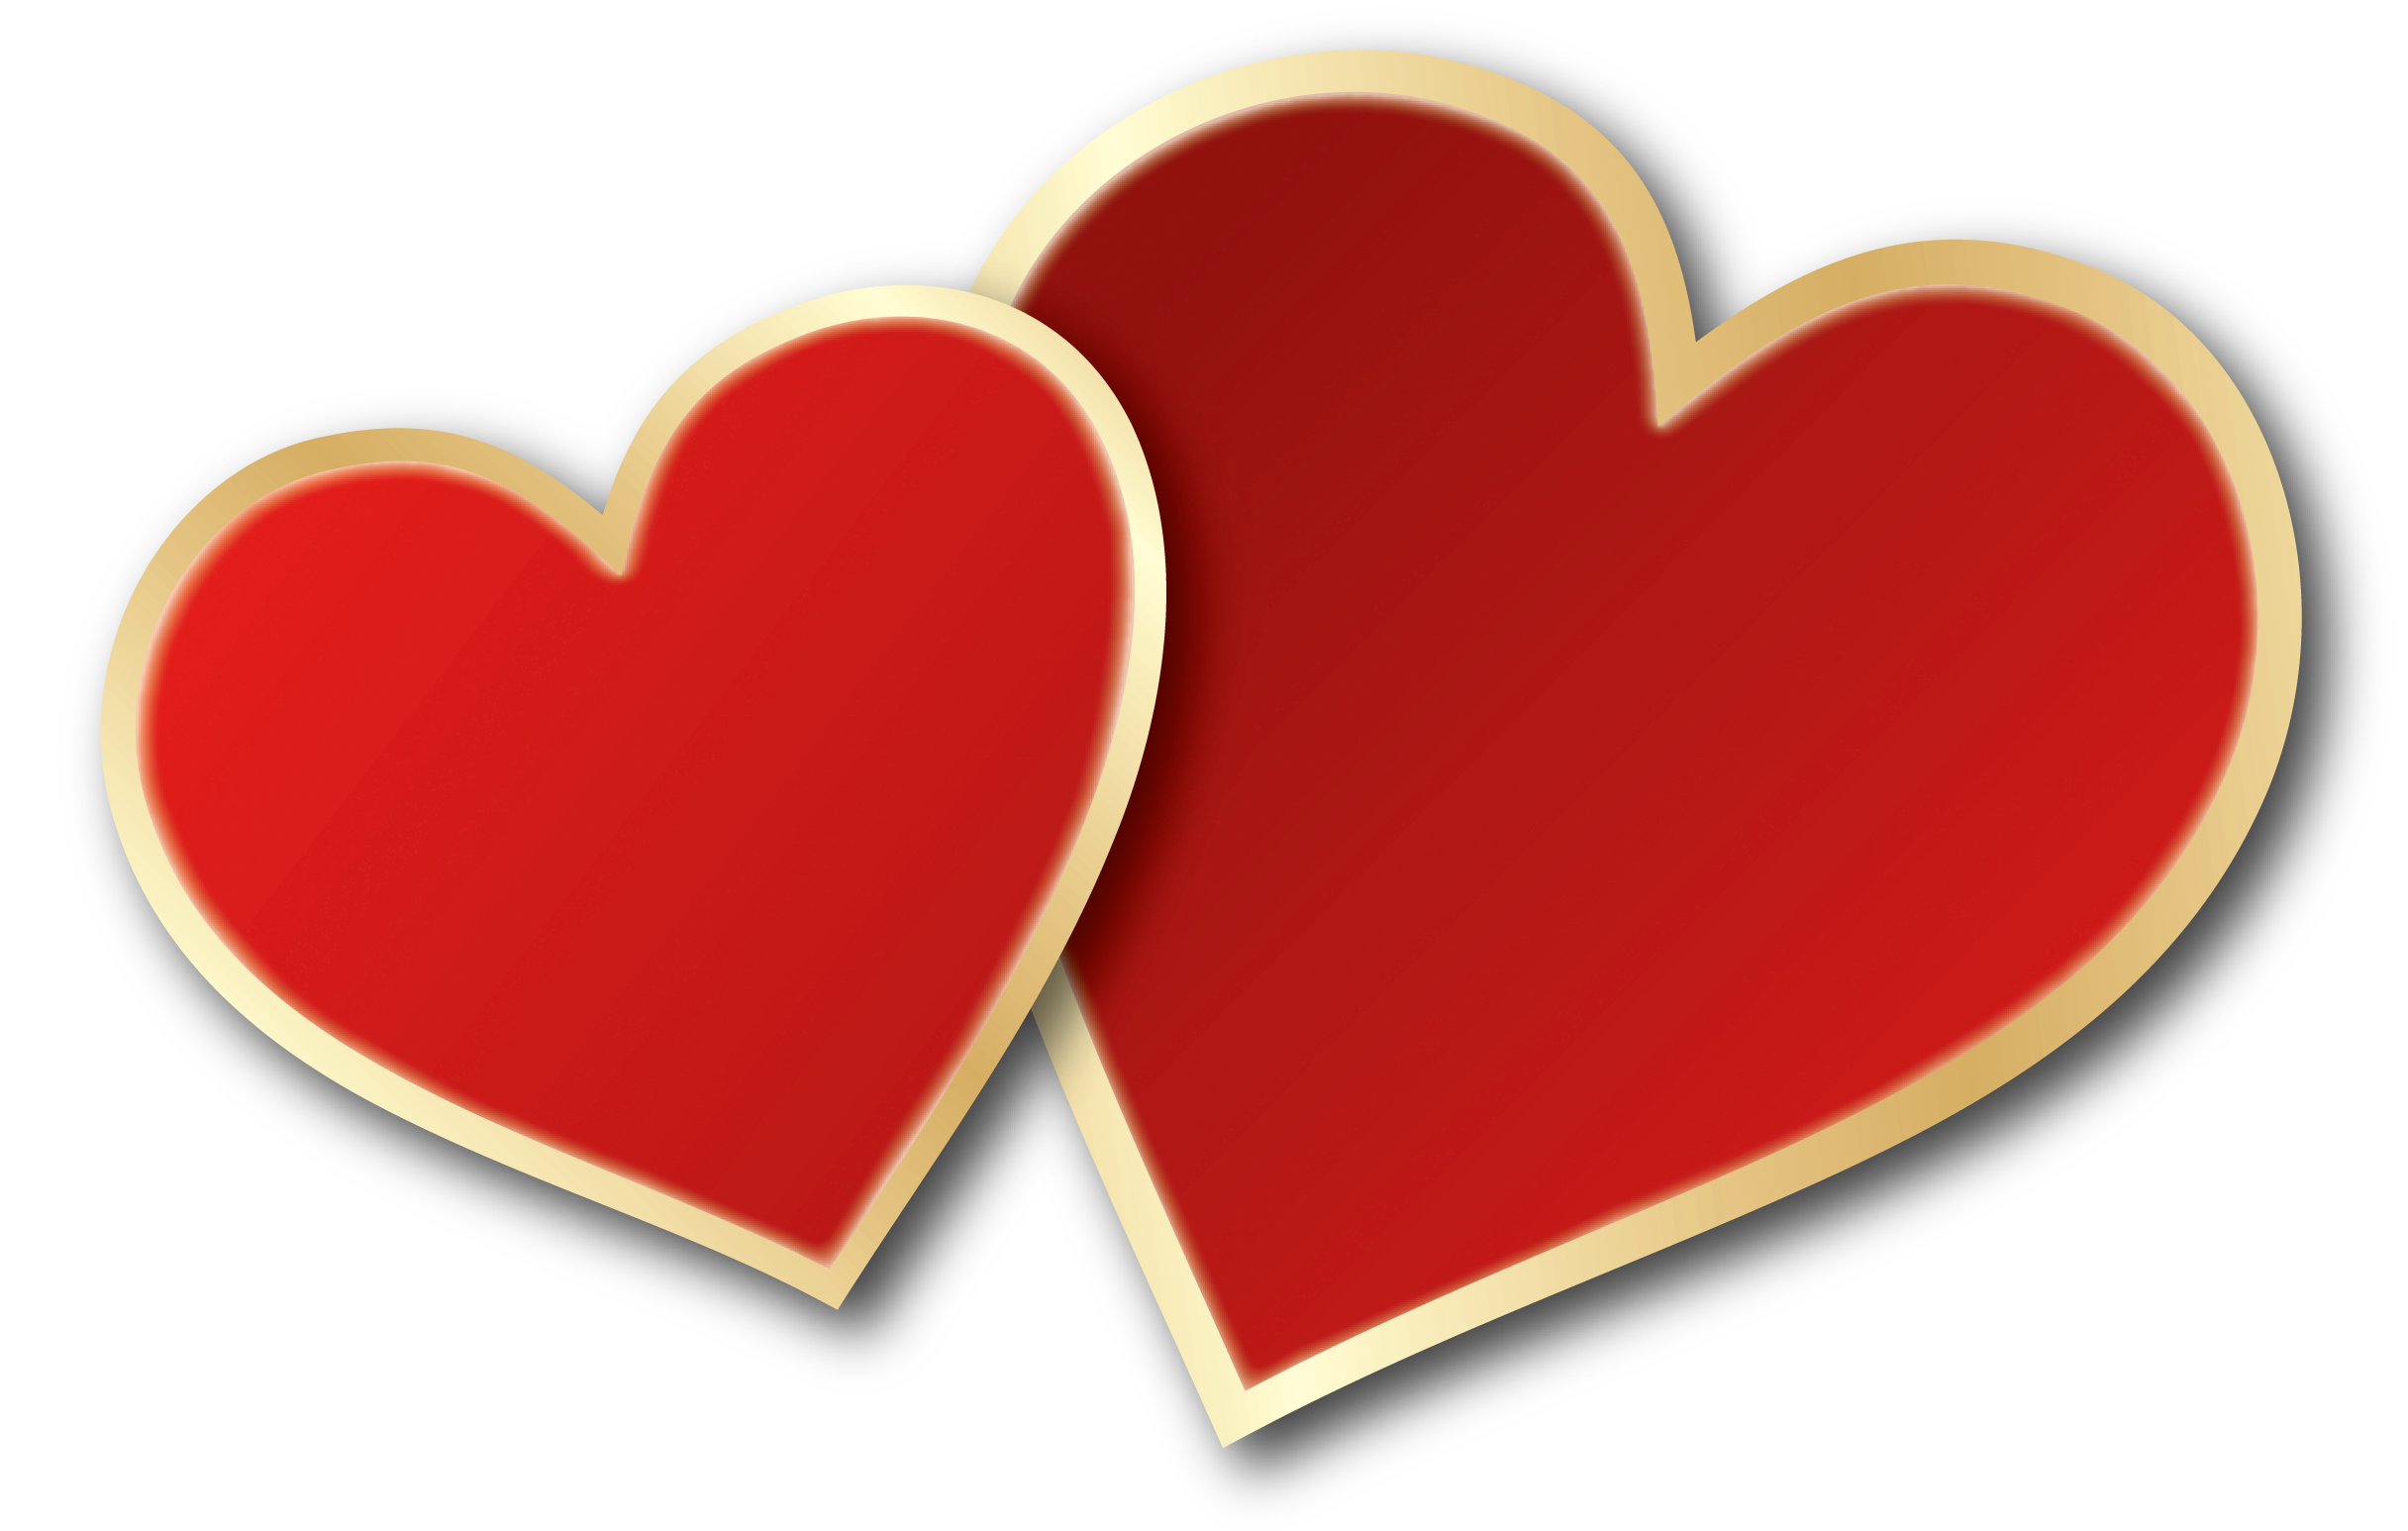 Valentines Day Immagine del cuore PNG con sfondo Trasparente